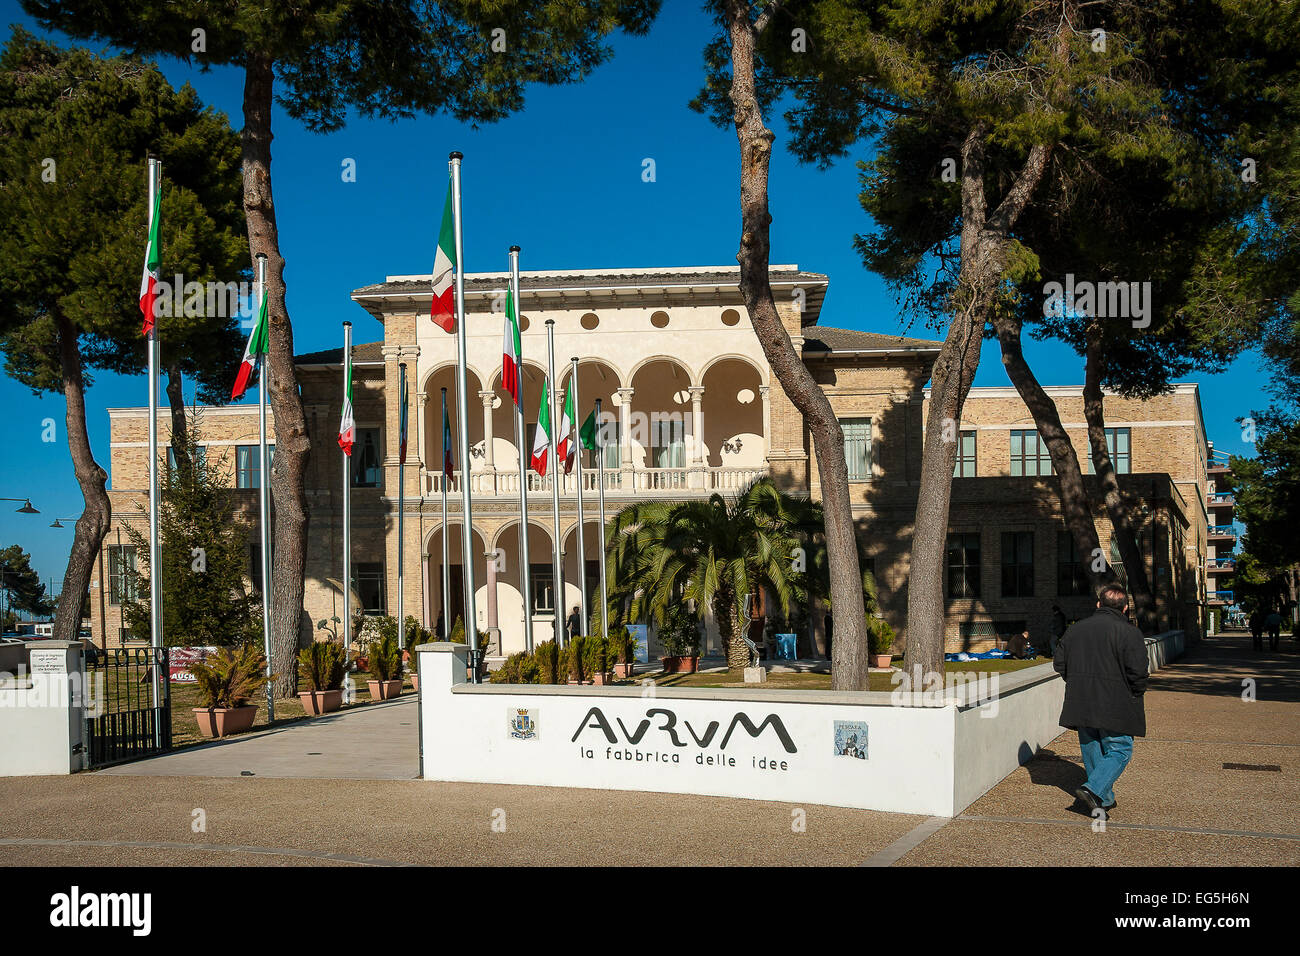 Abruzzo , Pescara , sede della fabbrica di Liquore Aurum , ora la fabbrica delle  idee Foto stock - Alamy